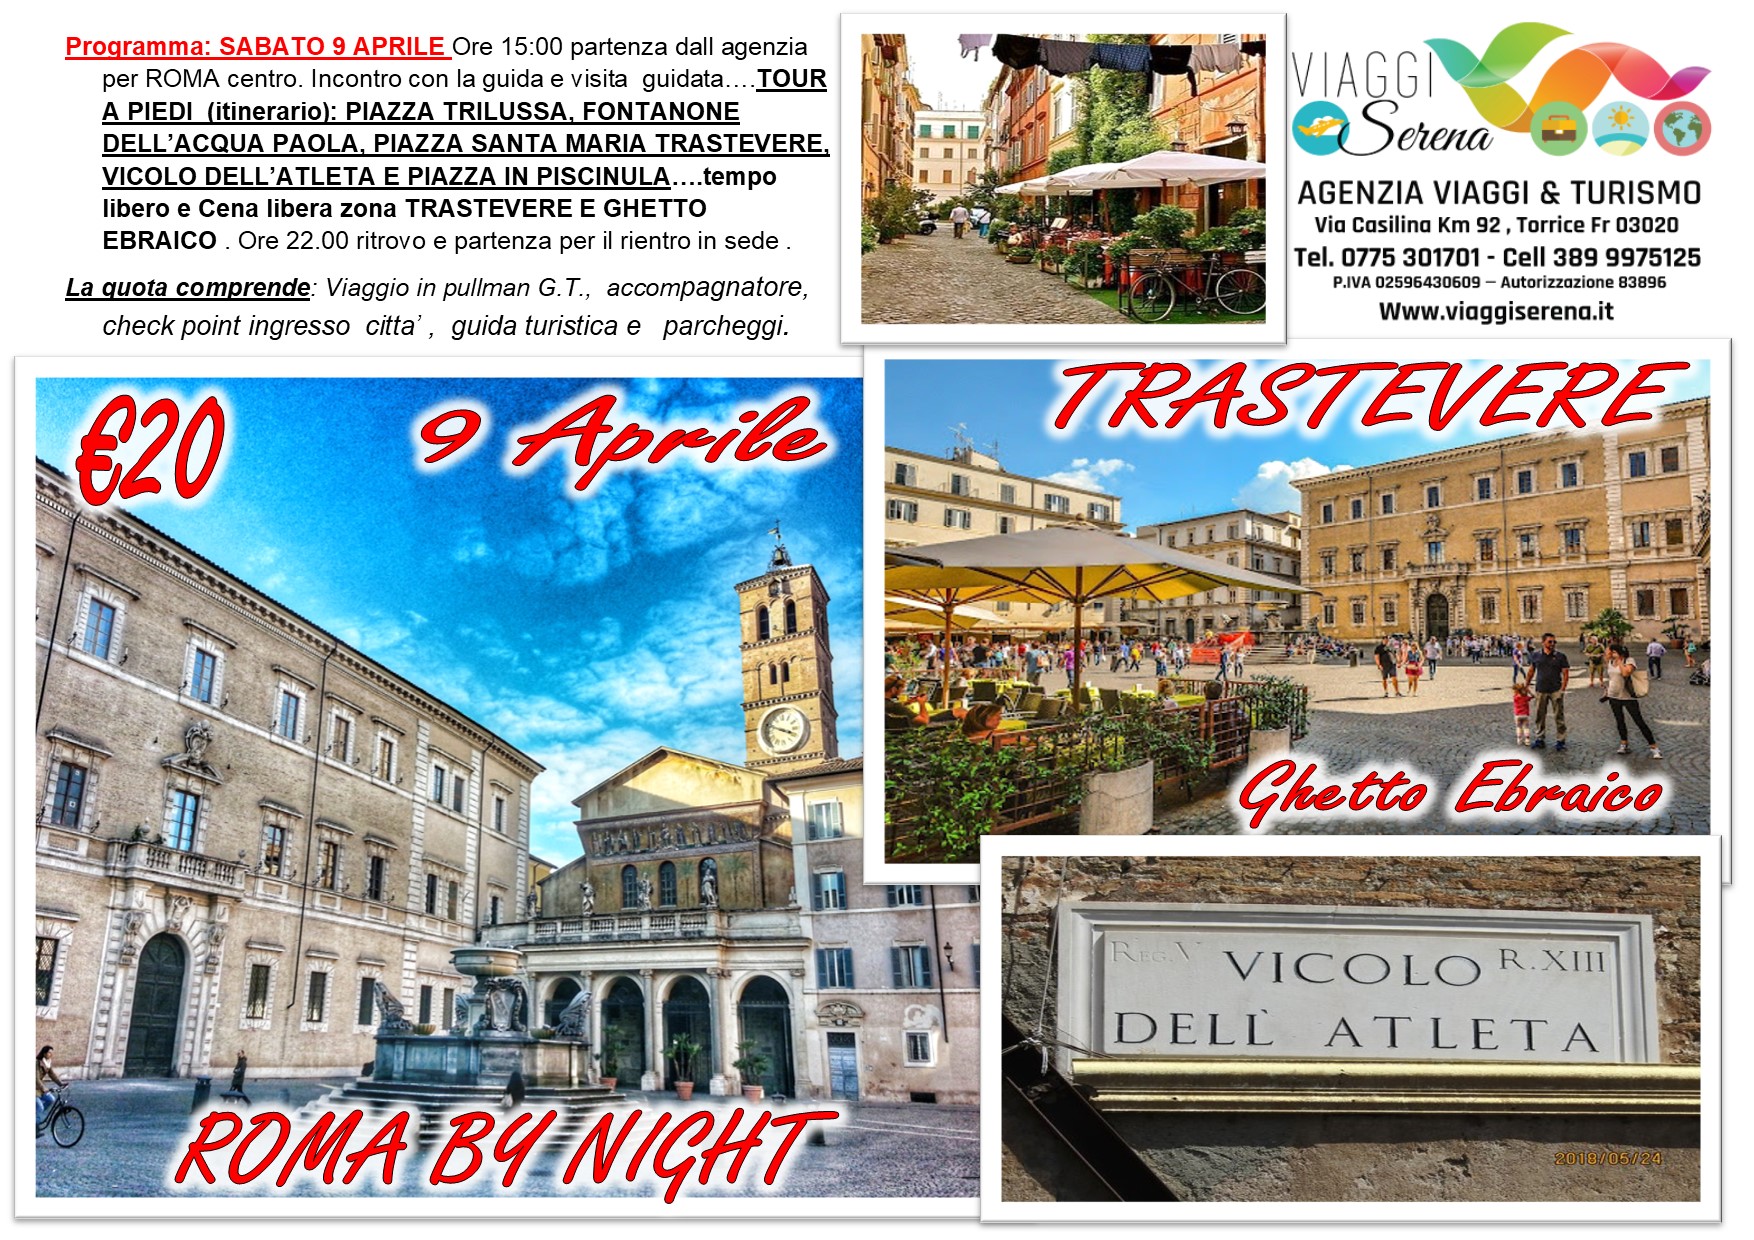 Viaggi di Gruppo: Roma by night “Trastevere & Ghetto Ebraico” 9 Aprile € 20,00